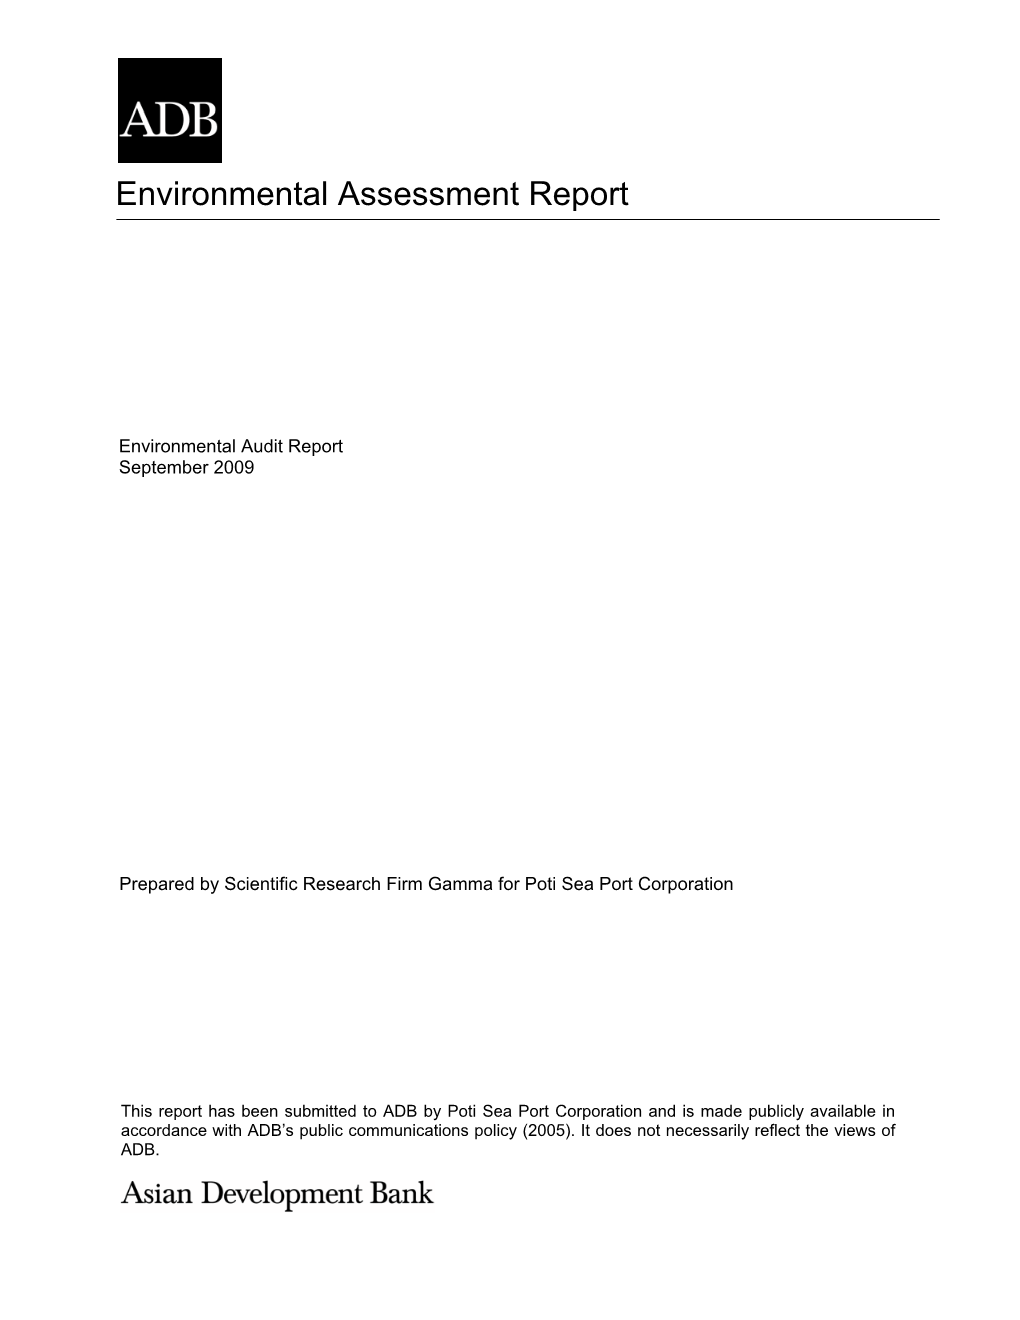 Environmental Assessment Report: Georgia, Port of Poti